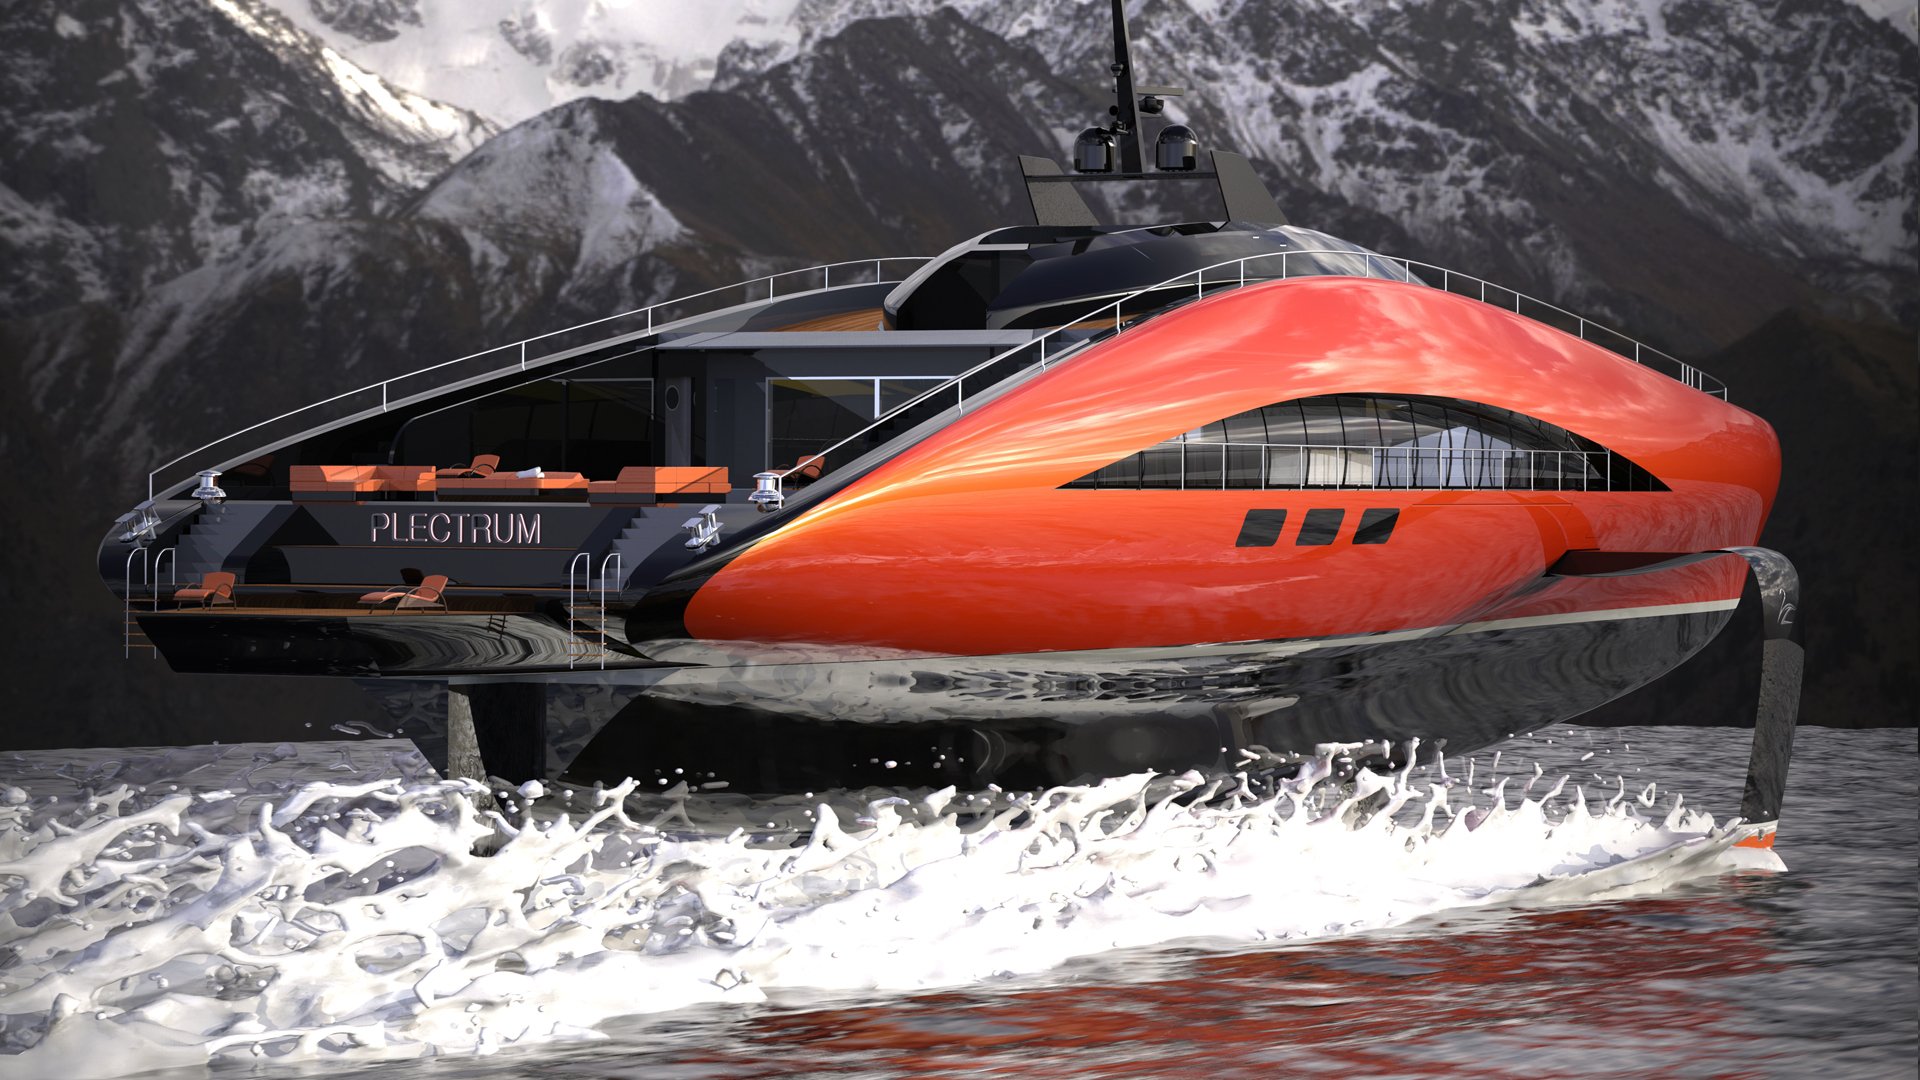 imagen 7 de Plectrum Hydrofoil Yacht, el diseño de Lazzarini que tiene todo lo que puedas soñar en un yate de lujo.